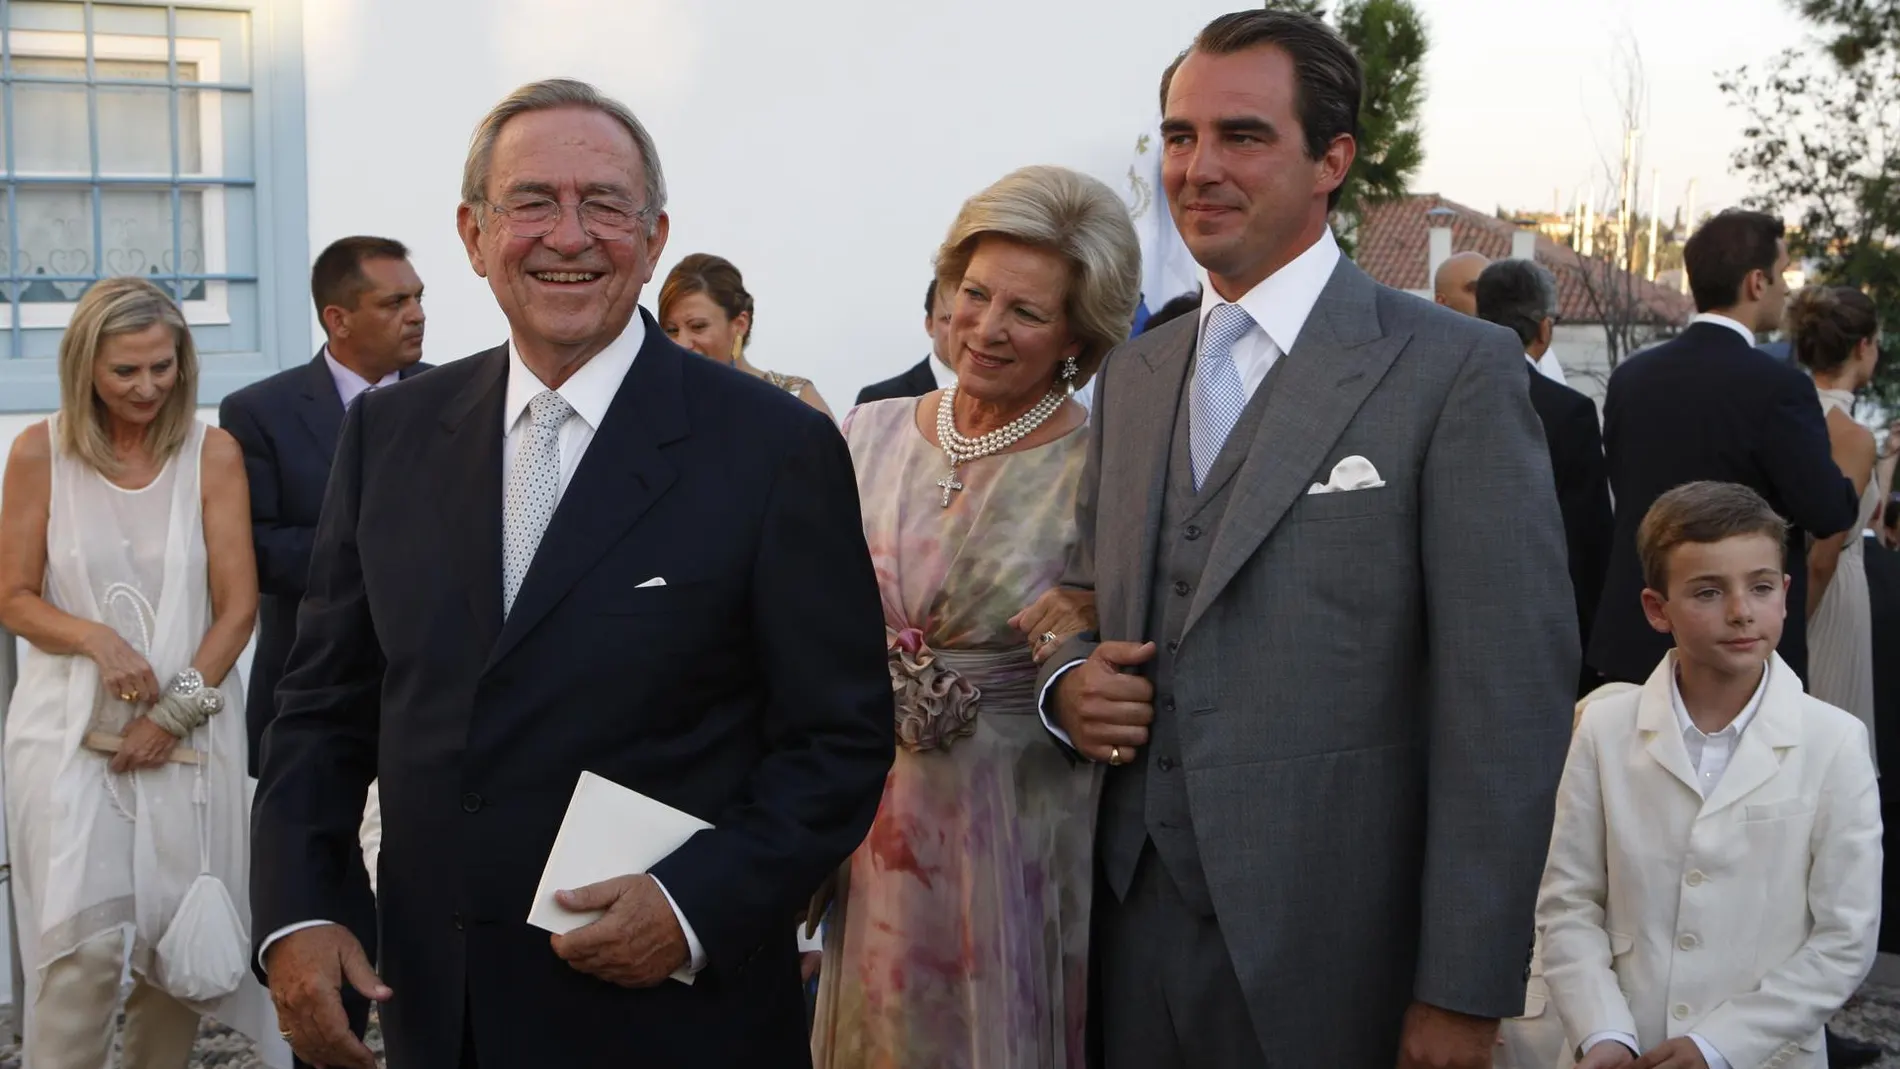 Grecia.- La Casa Real griega anuncia el divorcio del príncipe Nicolás de Grecia y Tatiana Blatnik